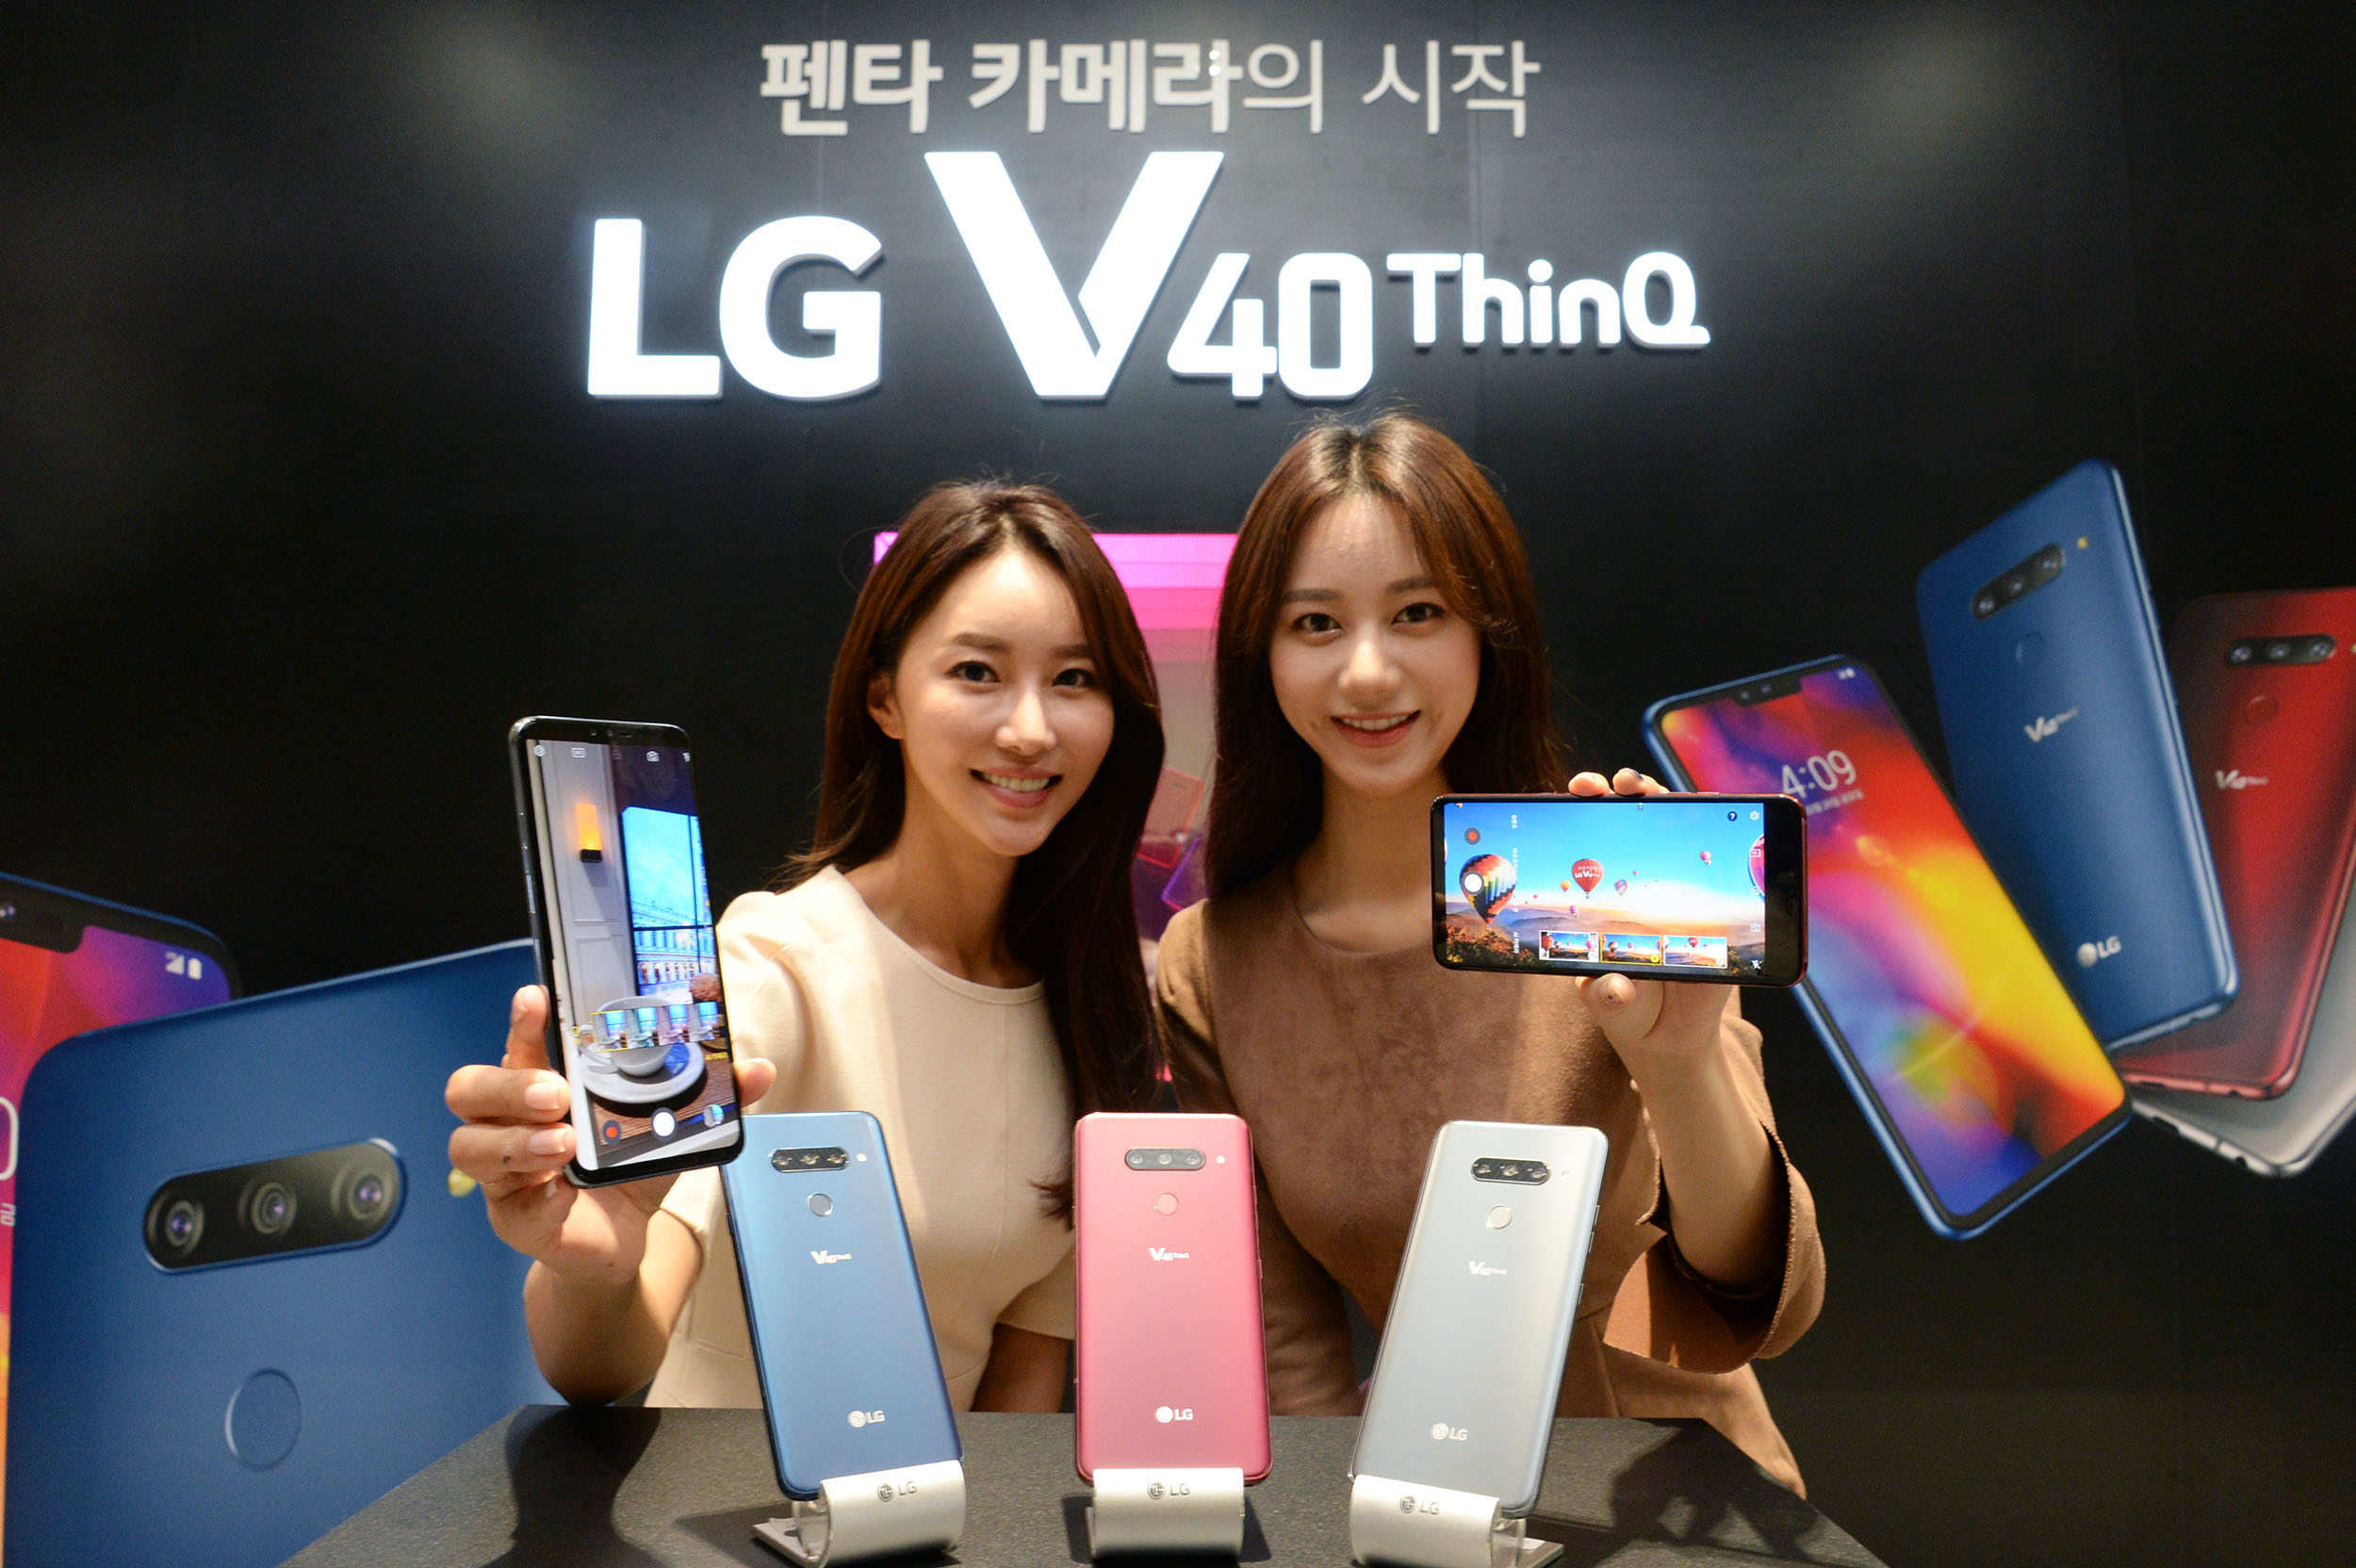 LG전자가 4일 서울 마곡에 위치한 'LG사이언스파크'에서 새로운 전략 스마트폰 LG V40 ThinQ 공개 행사를 가졌다. 모델들이완성도 높은 플랫폼 위에 스마트폰에서 가장 많이 쓰는 카메라 기능을 중심으로 한층 업그레이드 한 LG V40 ThinQ를 소개하고 있다. 